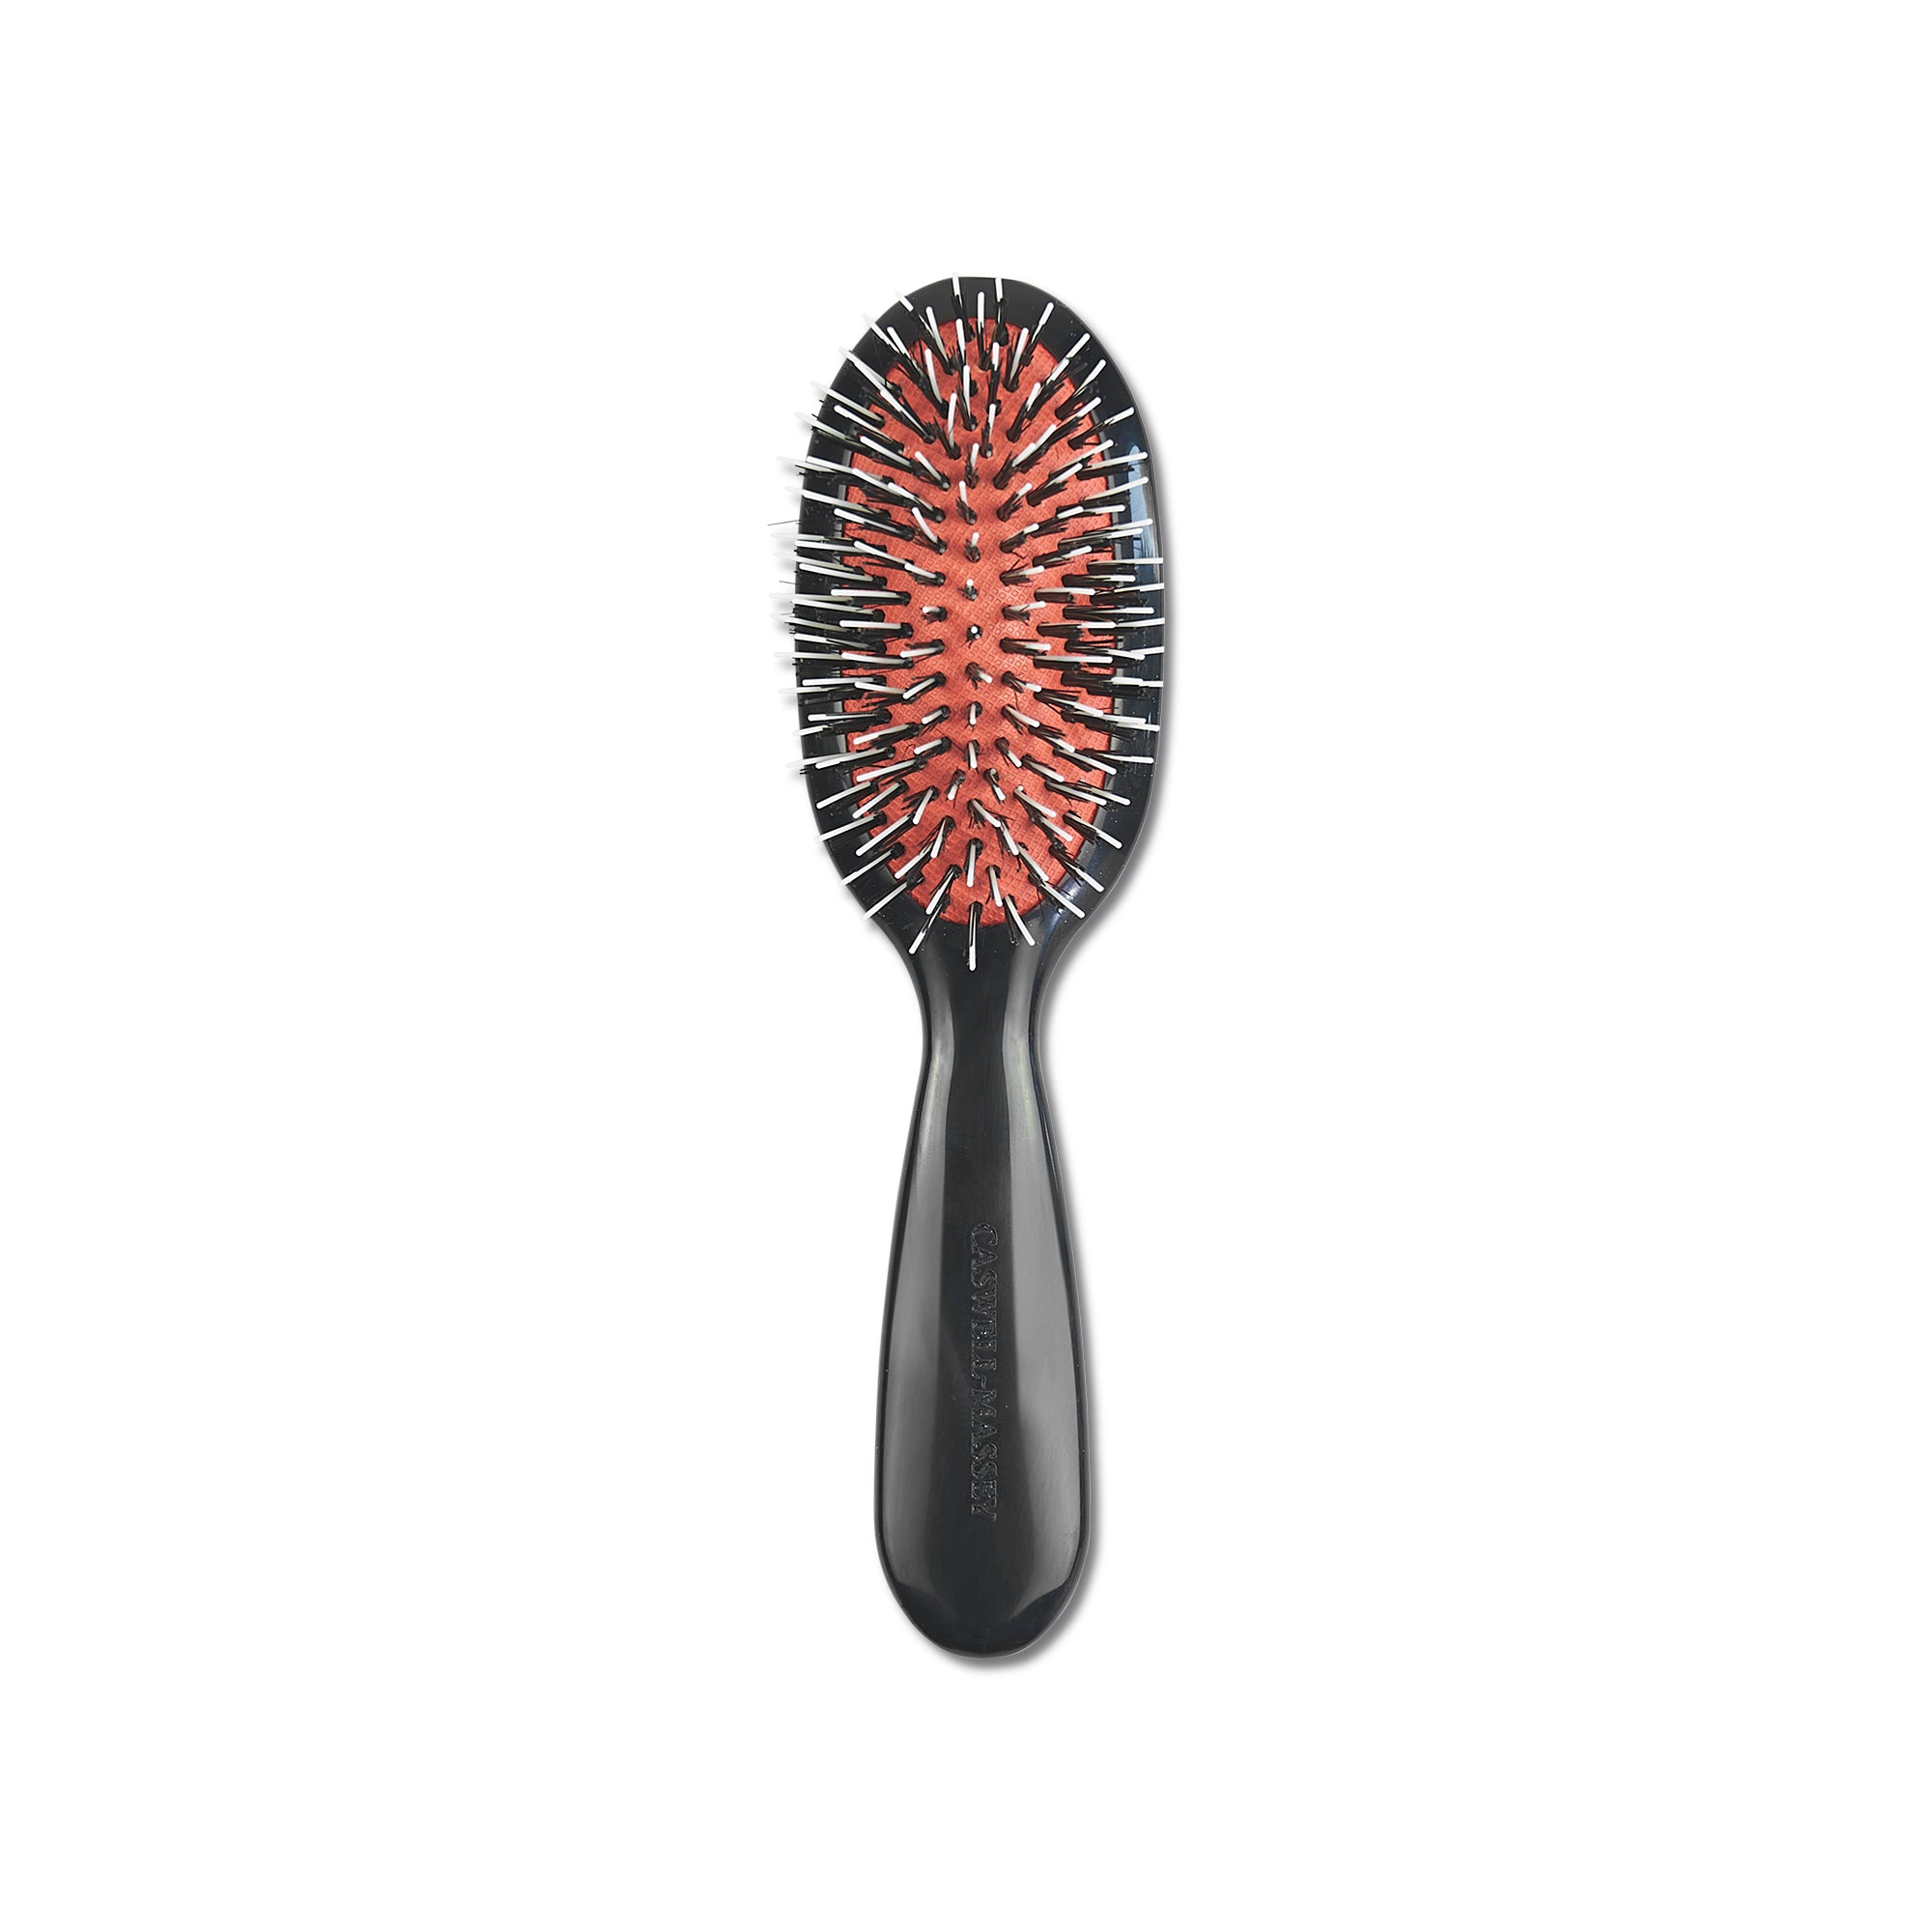 Mapepe Hair Brush Cleanser 梳子清洁器– Tao's